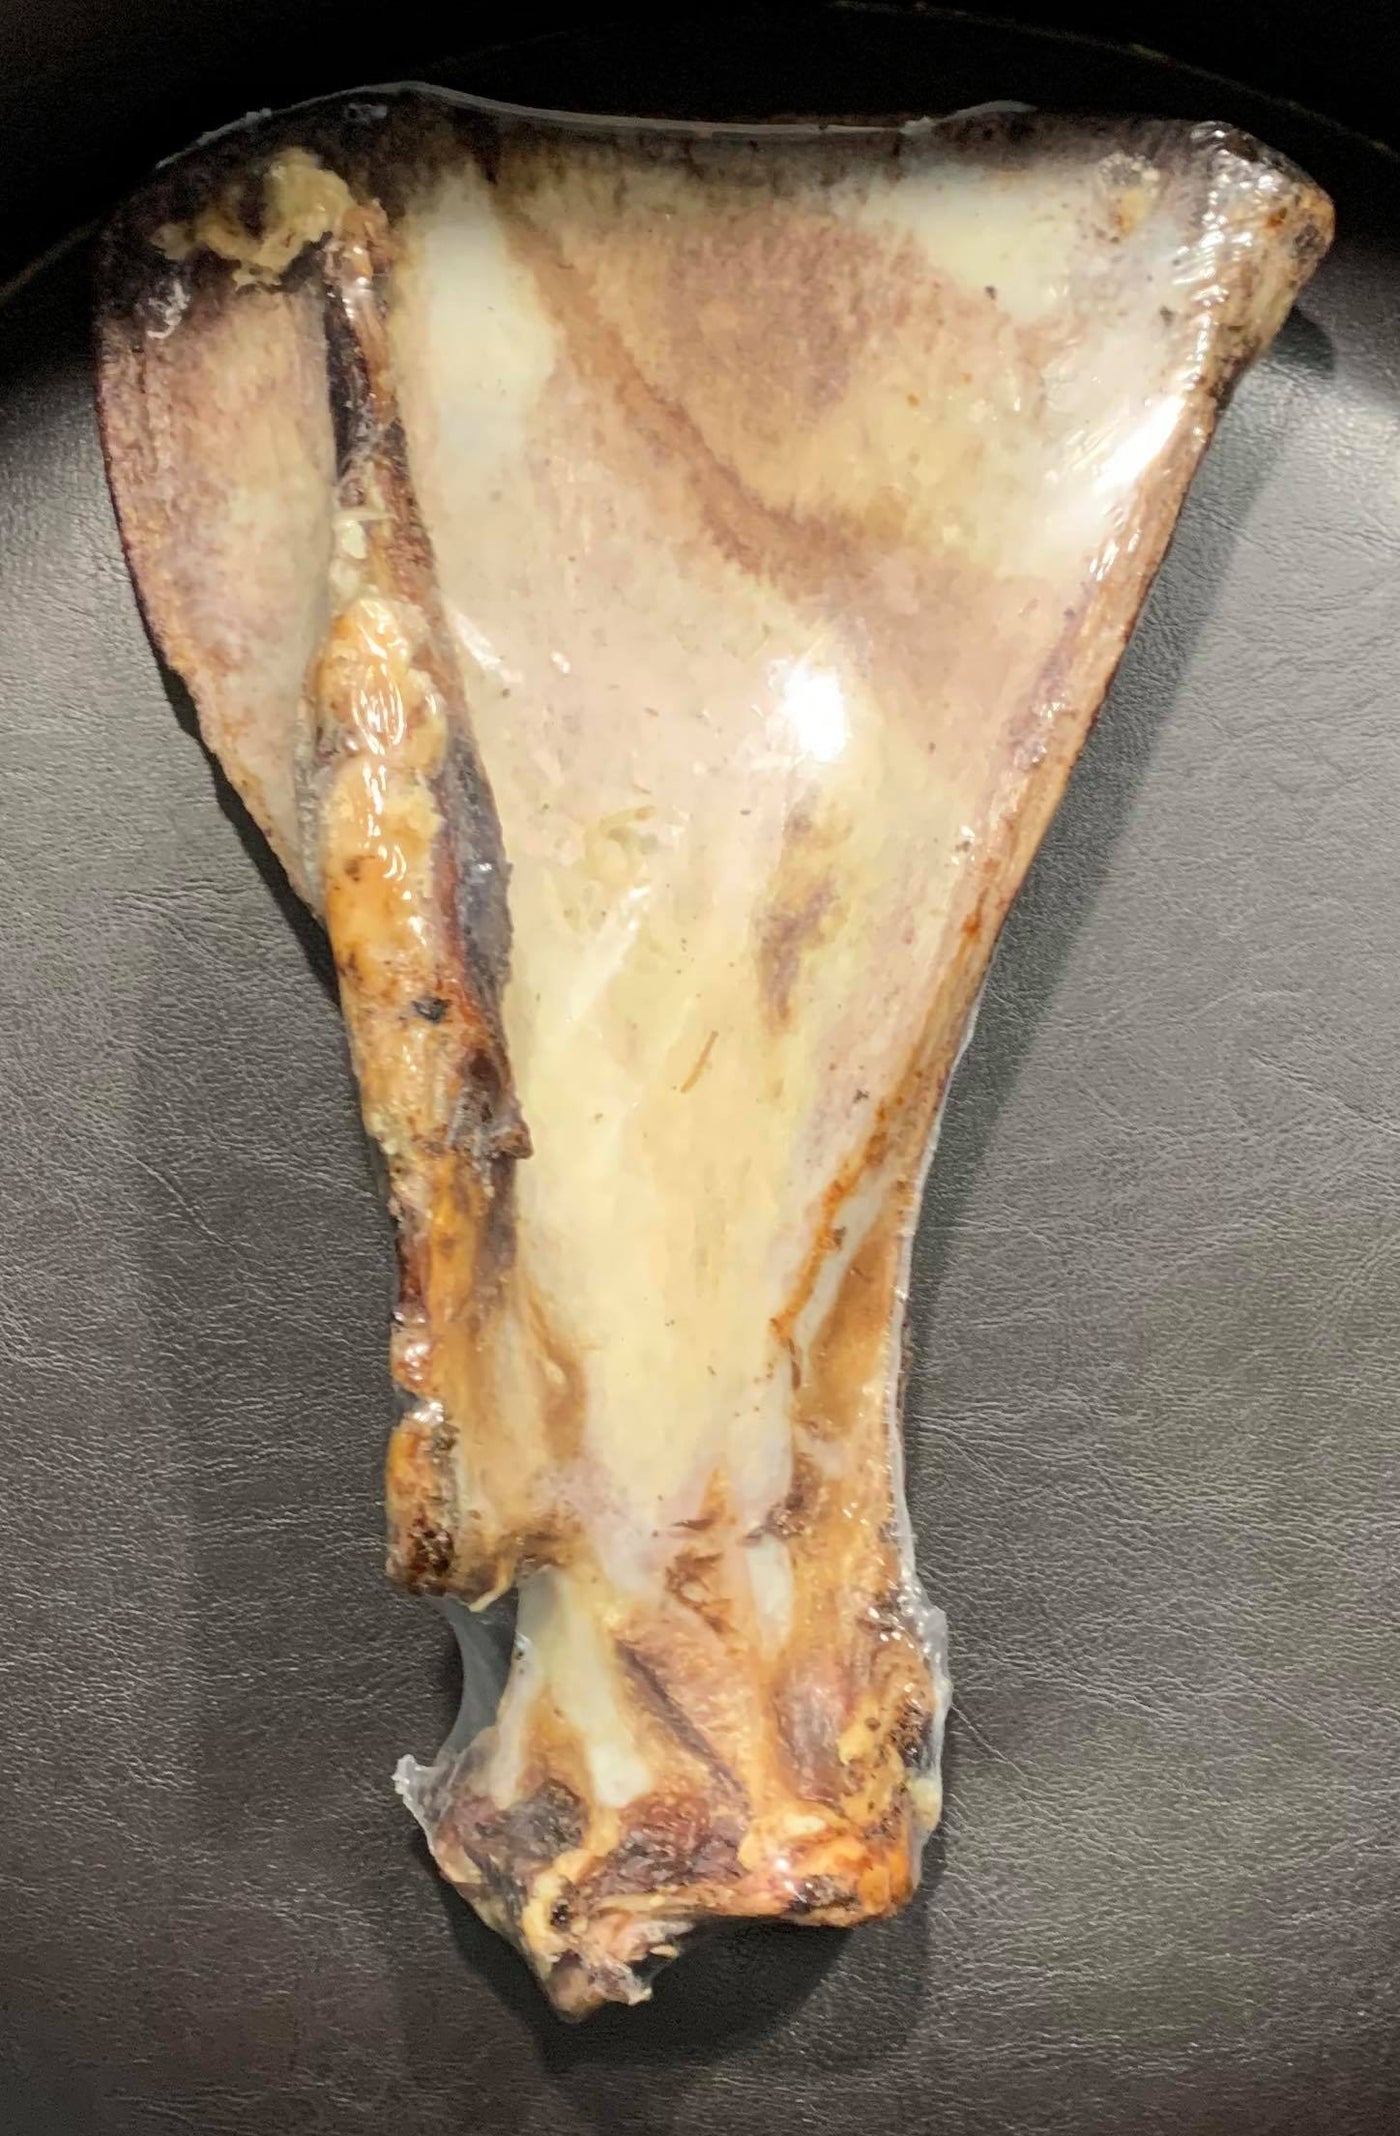 Dog Bone shaped auction paddles